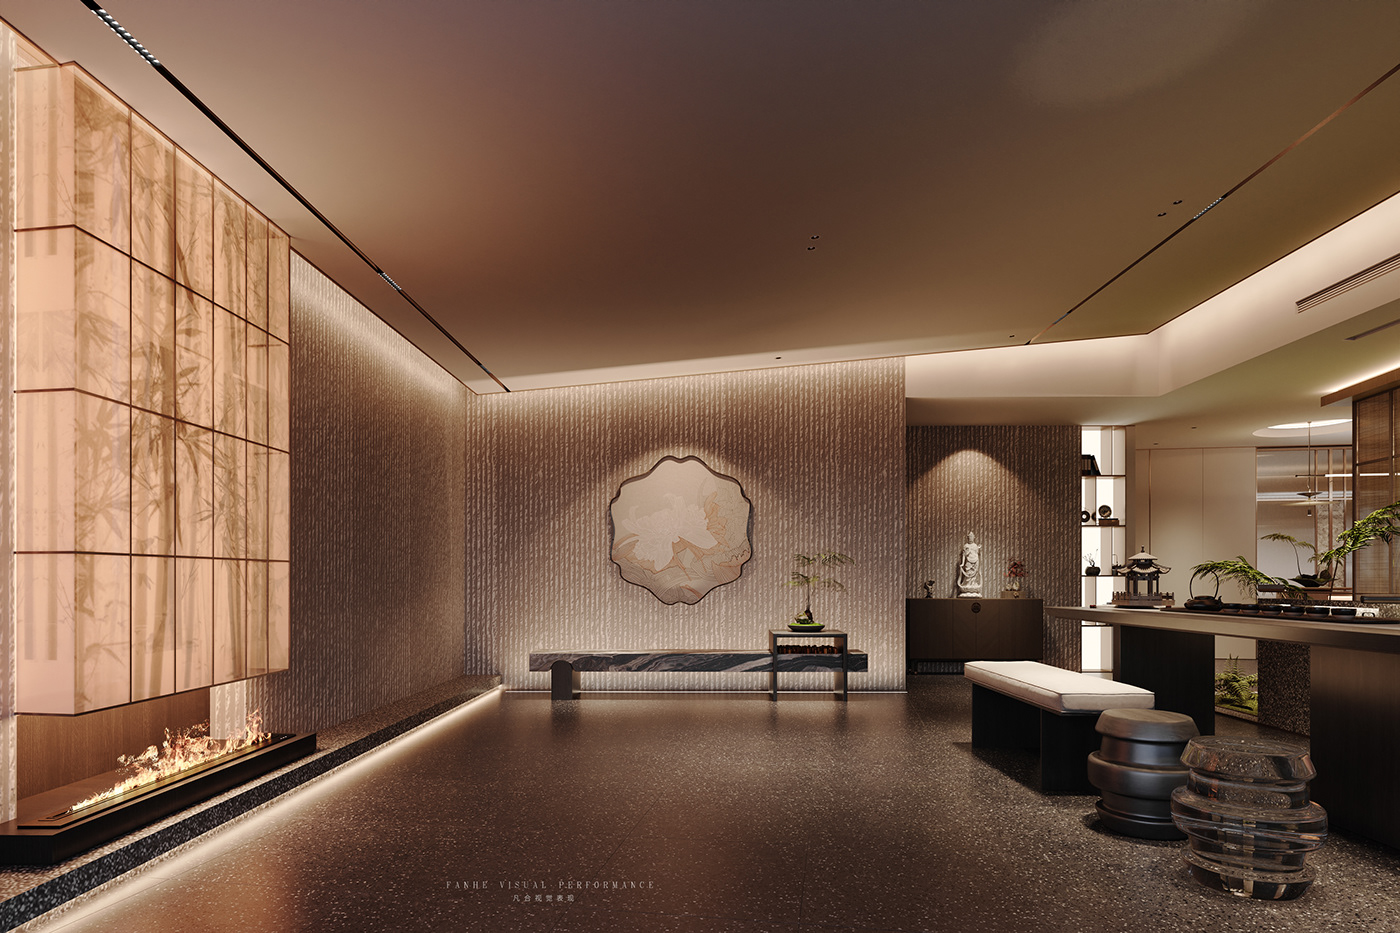 3ds max architecture Render visualization vray interior design  corona CGI